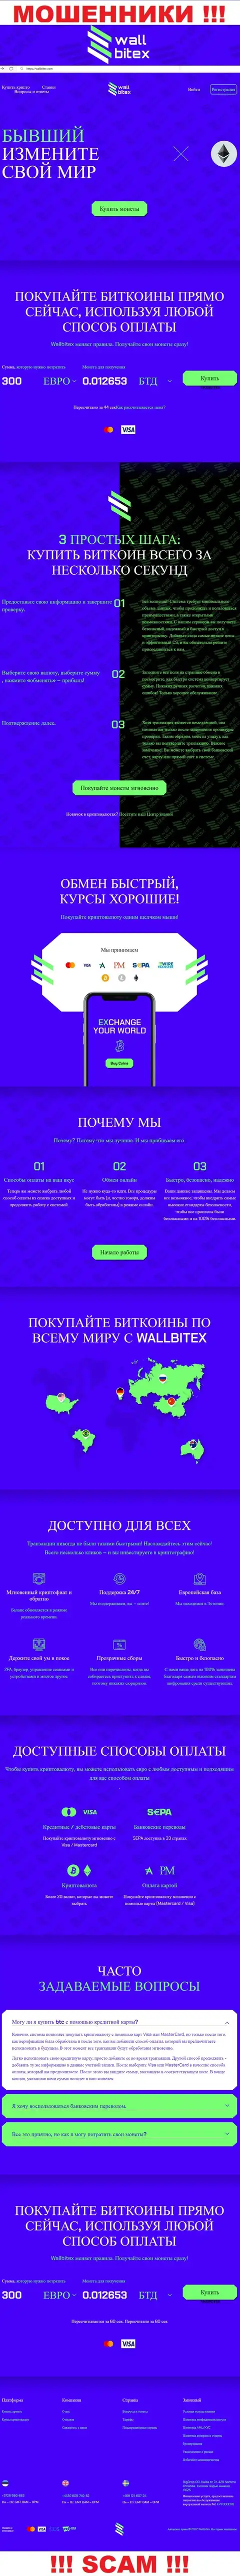 WallBitex Com - это официальный веб-сервис незаконно действующей организации WallBitex